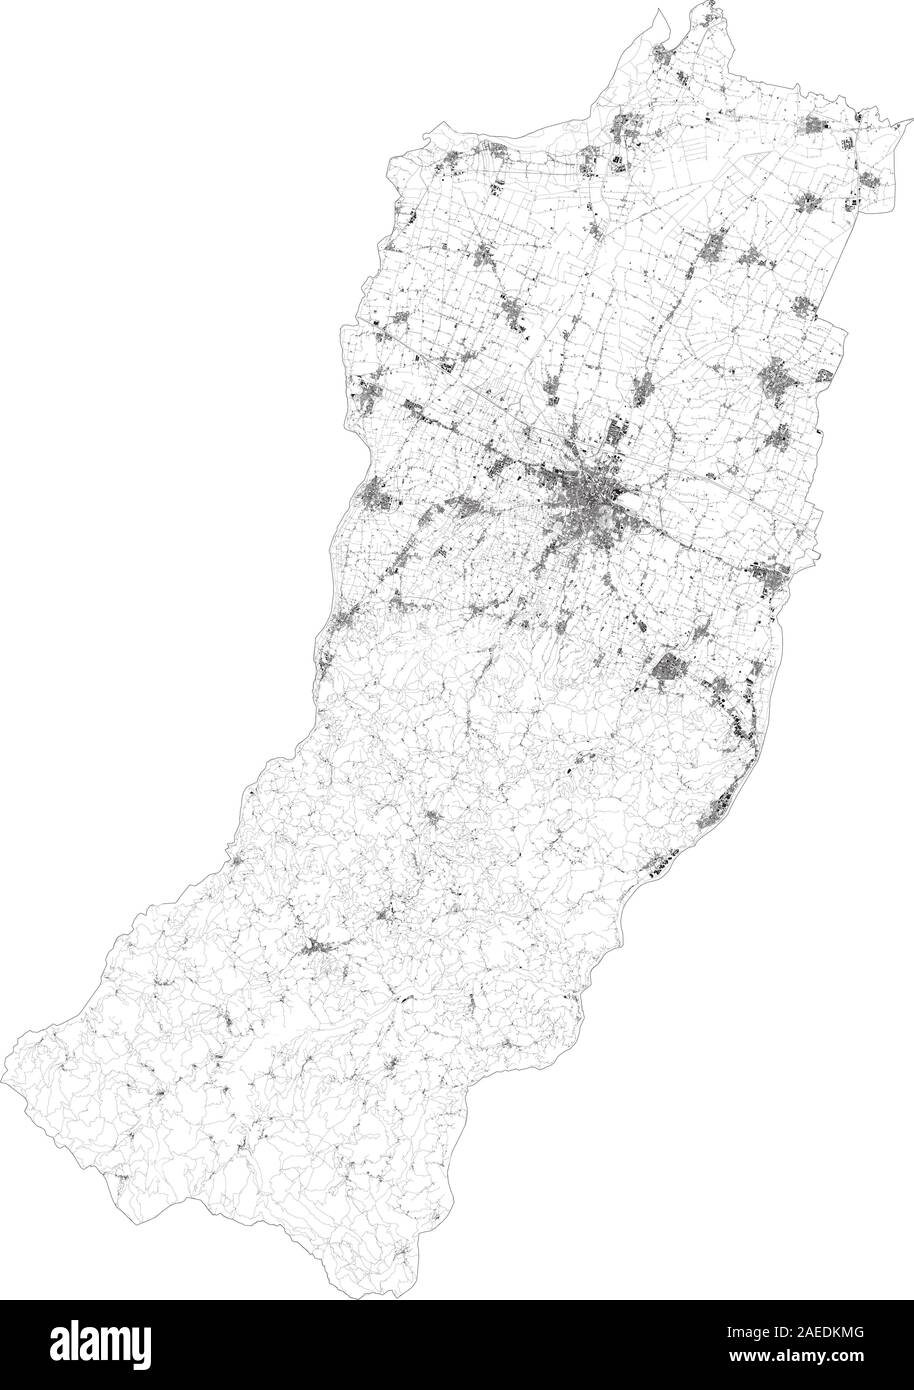 Sat-Karte der Provinz Reggio Emilia, Städte und Straßen, Gebäude und Straßen der Umgebung. Region Emilia-Romagna, Italien. Karte Stock Vektor